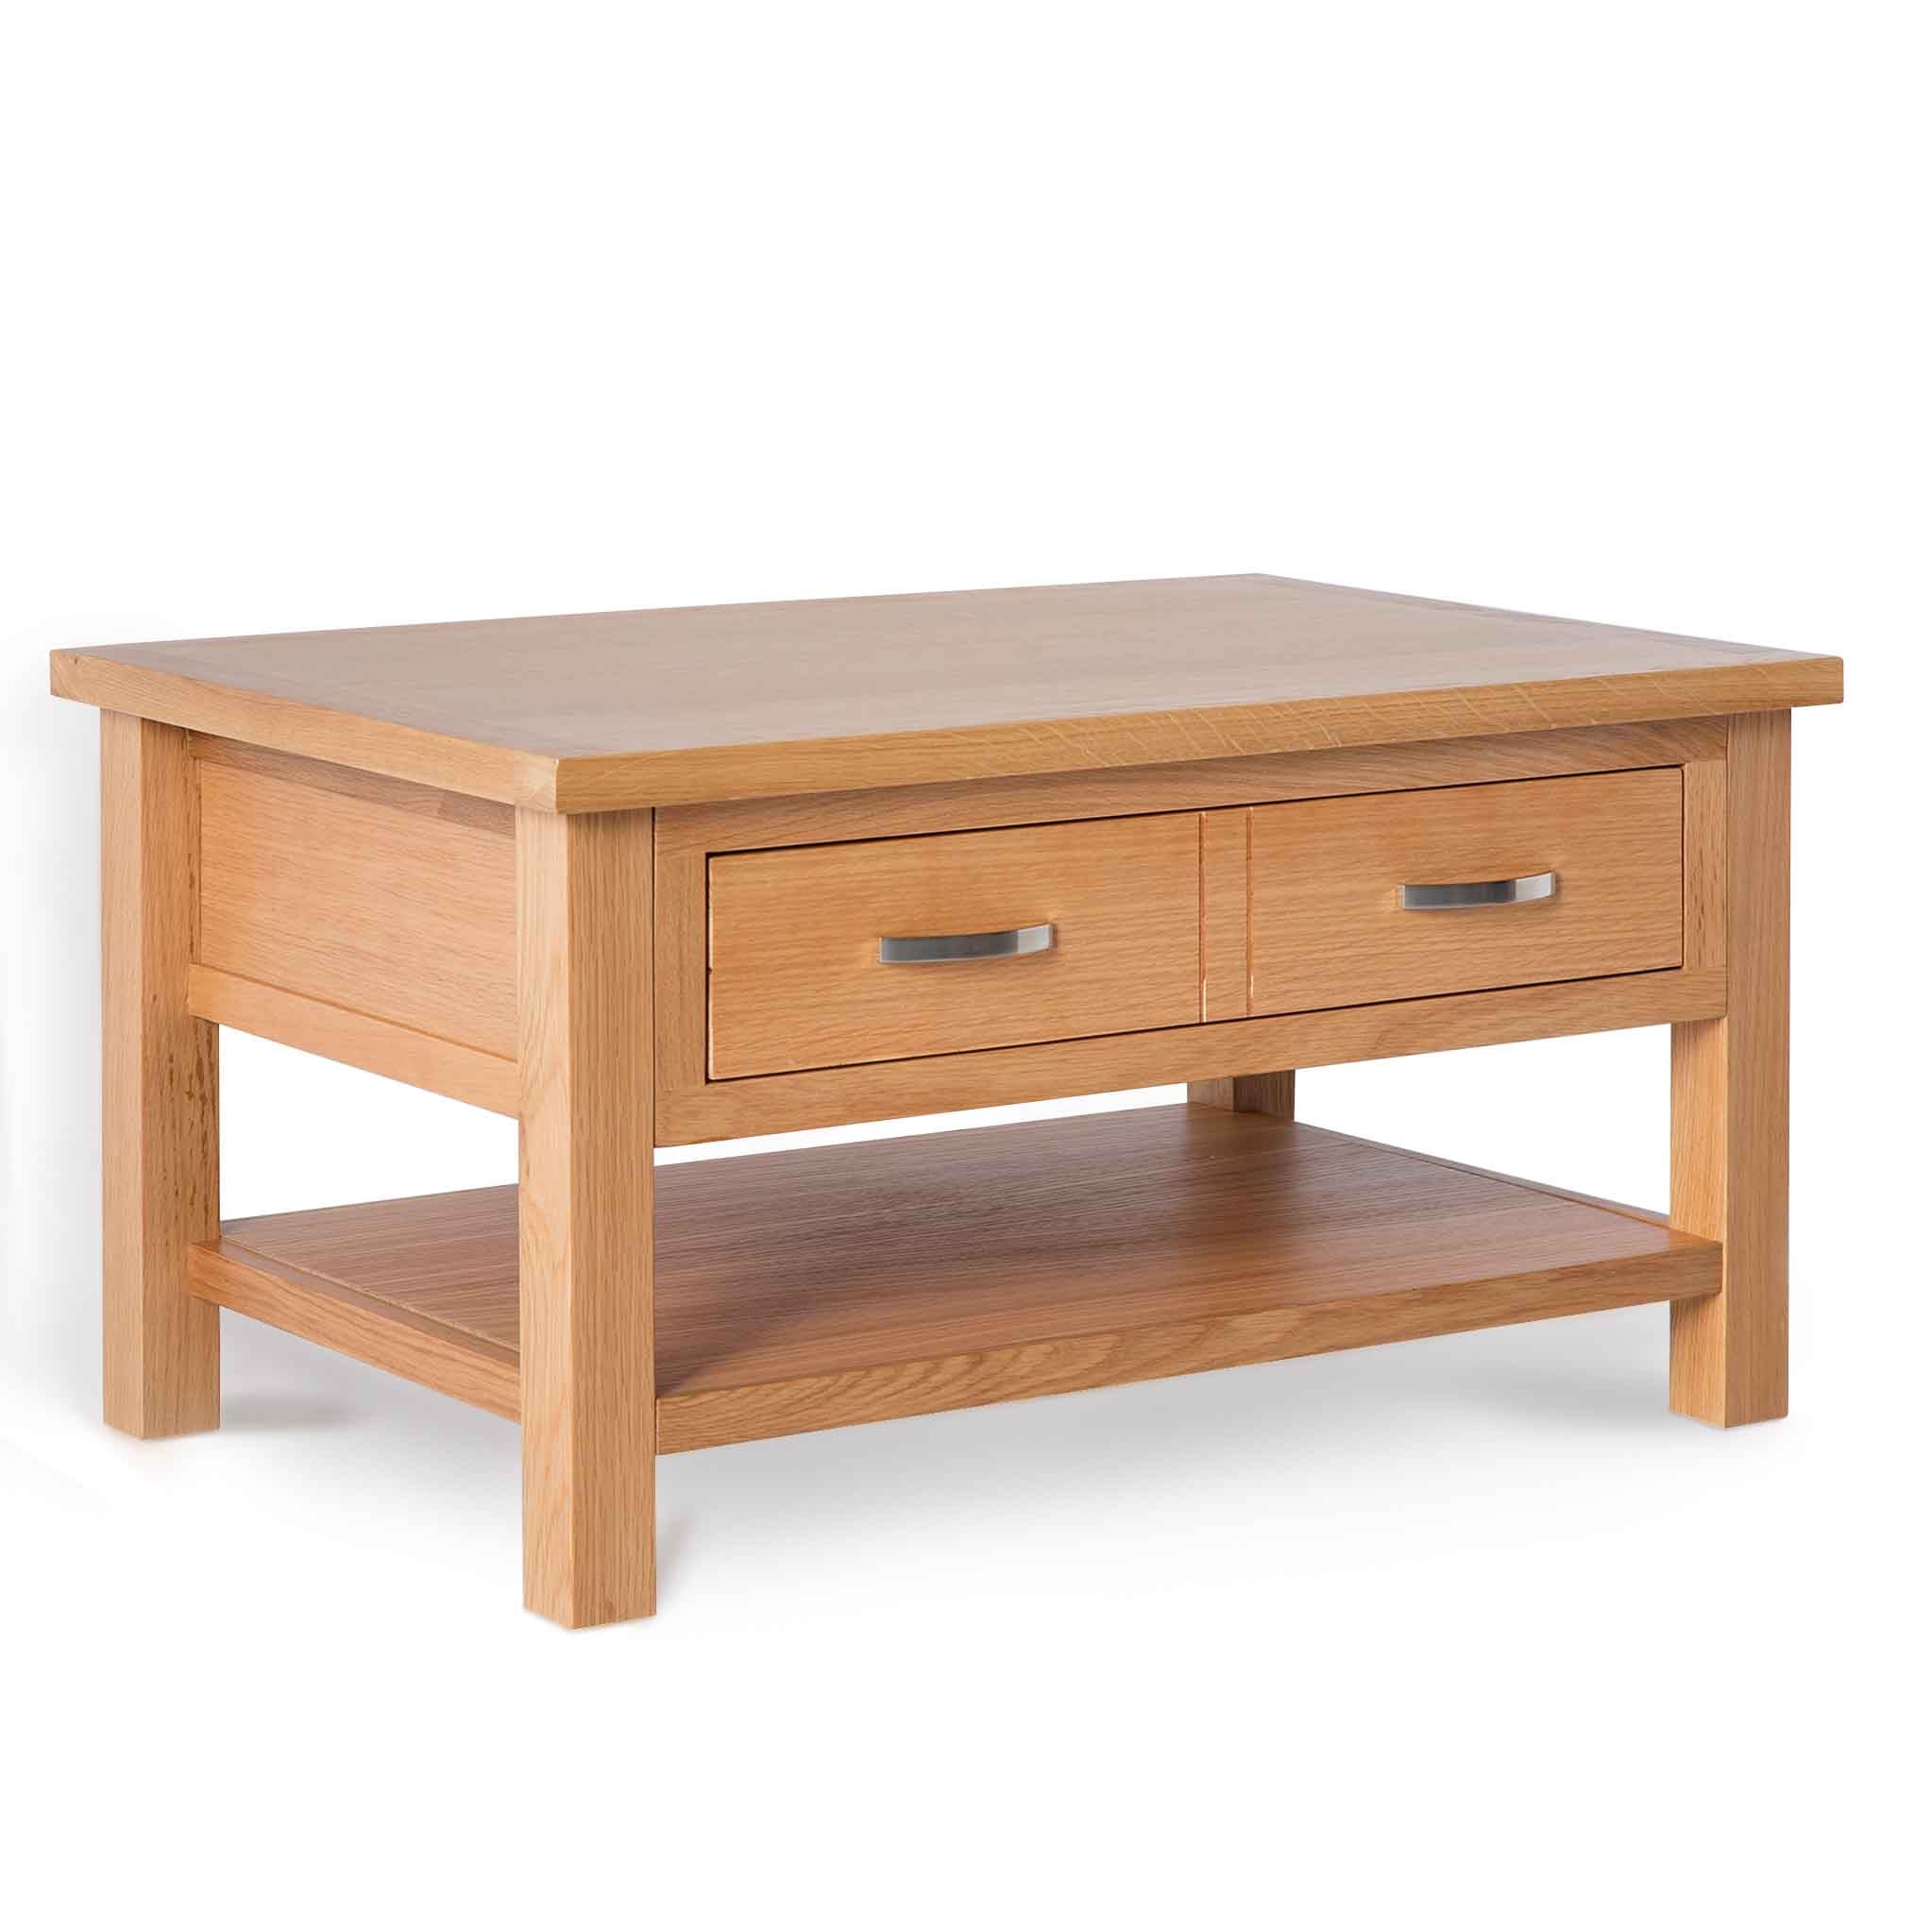 London Oak Coffee Table With Drawer Shelf Solid Wood Oak